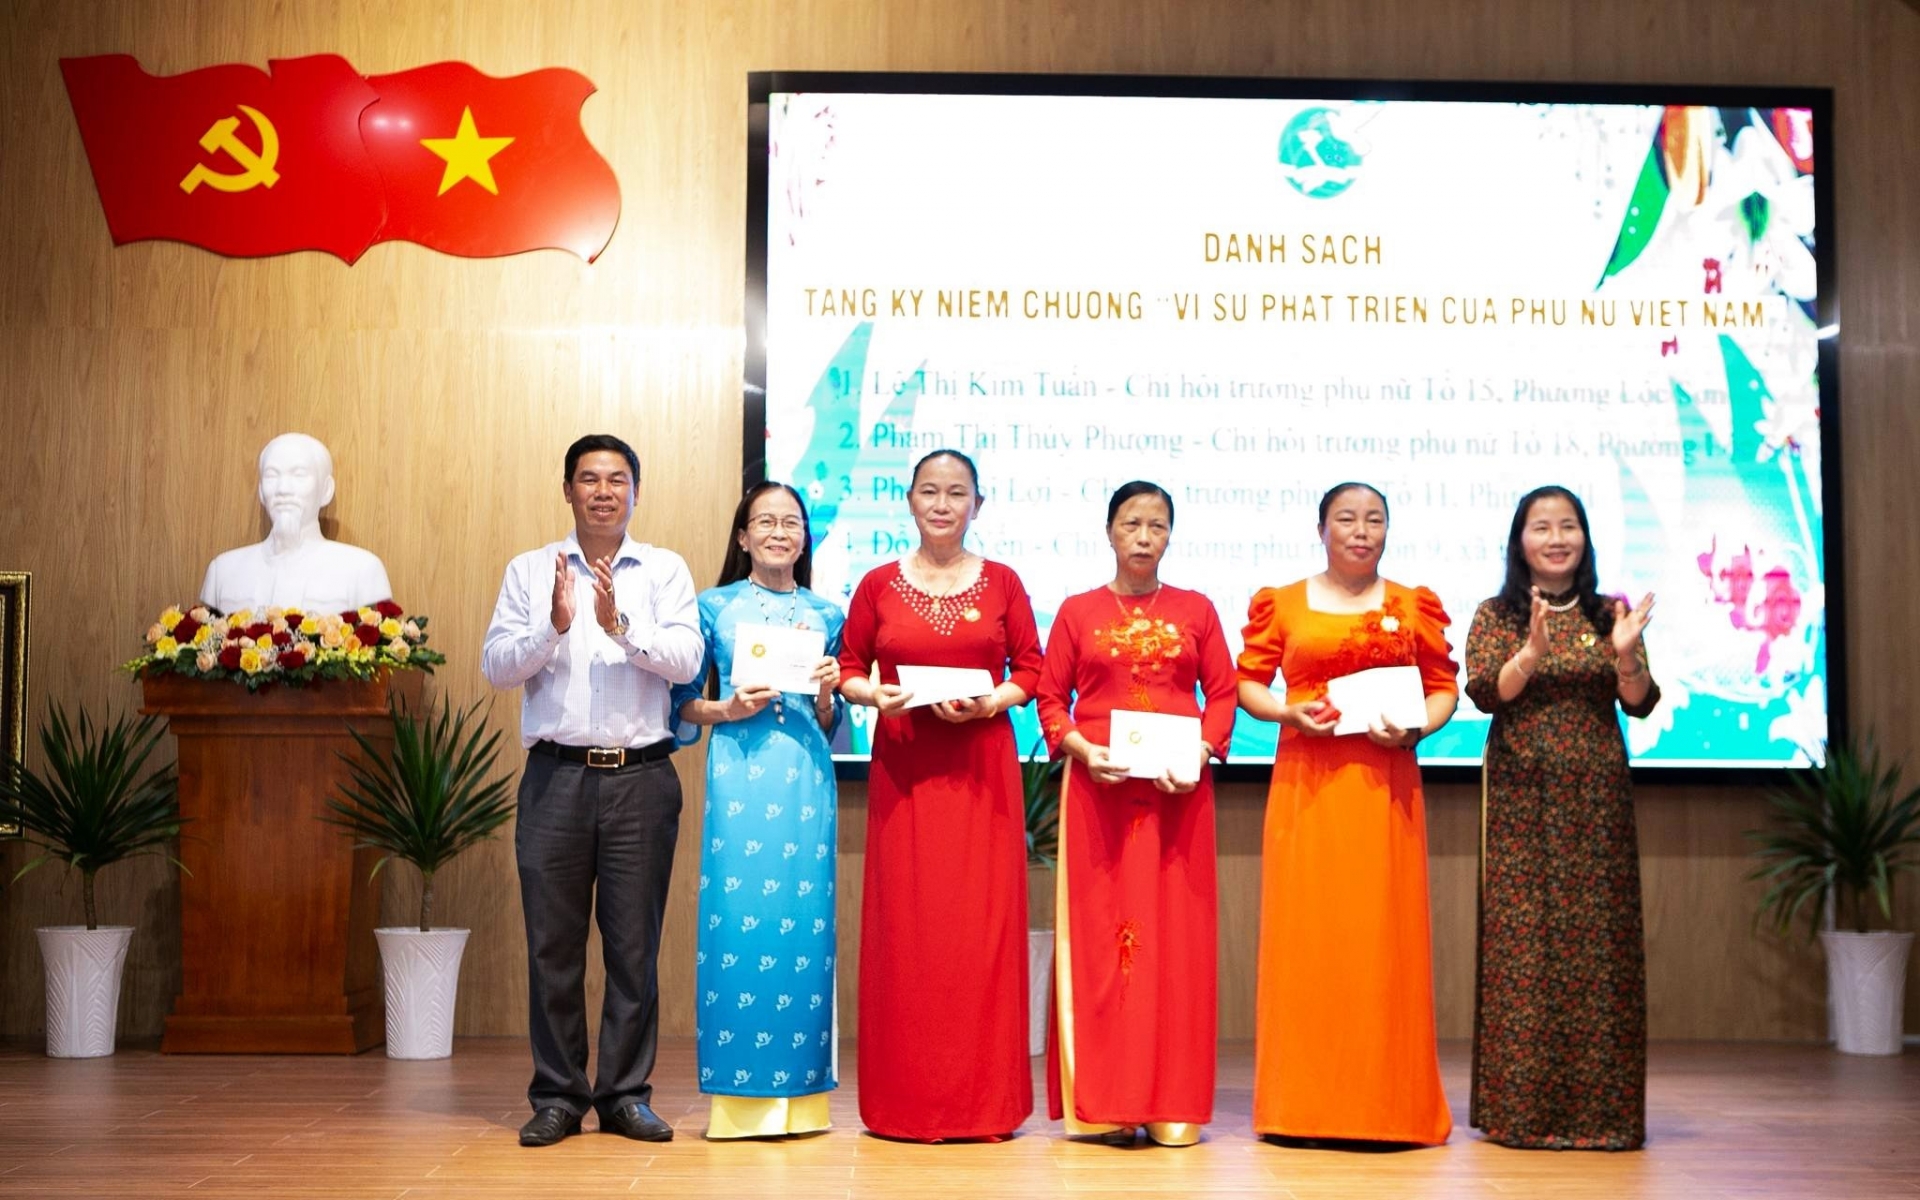 Các hội viên phụ nữ nhận Kỷ niệm chương Vì sự phát triển của Phụ nữ Việt Nam do Trung ương Hội Liên hiệp Phụ nữ Việt Nam trao tặng